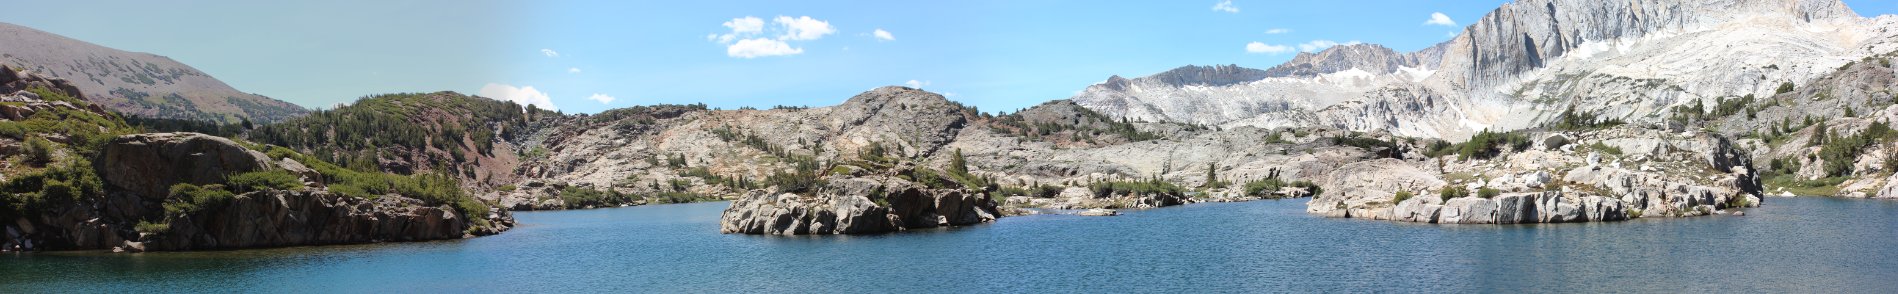 Shamrock Panorama